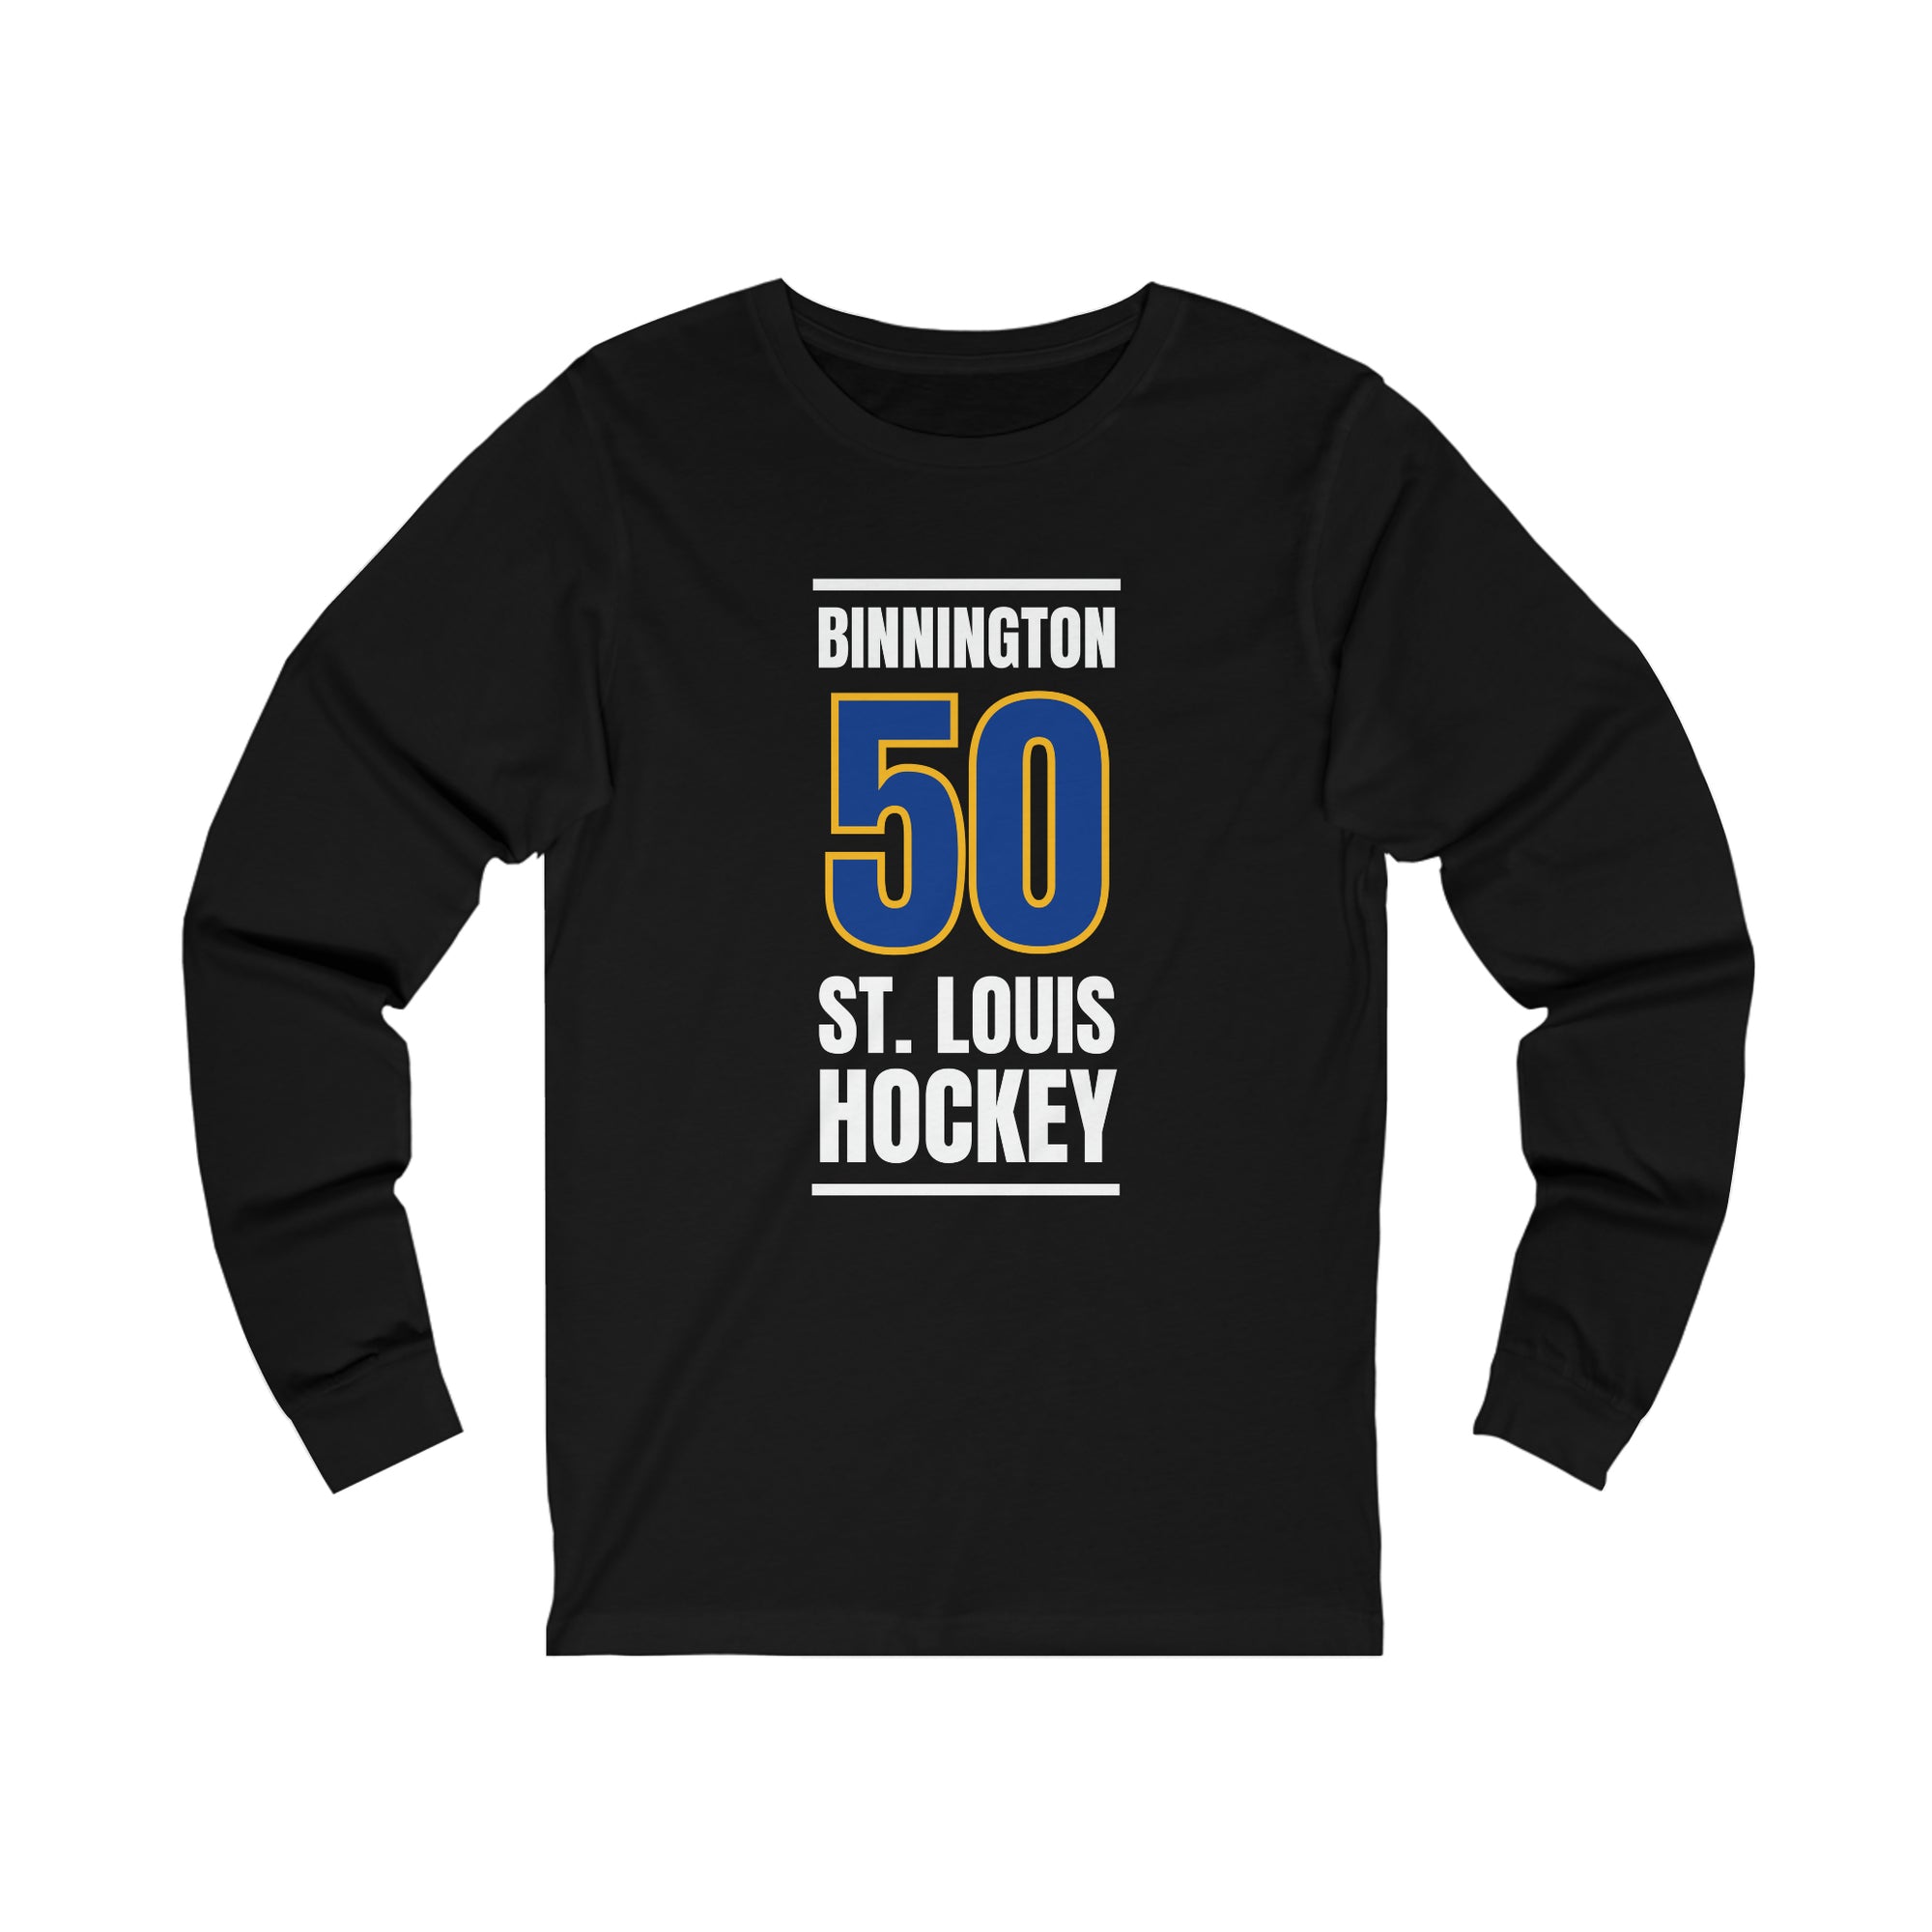 Binnington 50 St. Louis Hockey Blue Vertical Design Unisex Jersey Long Sleeve Shirt